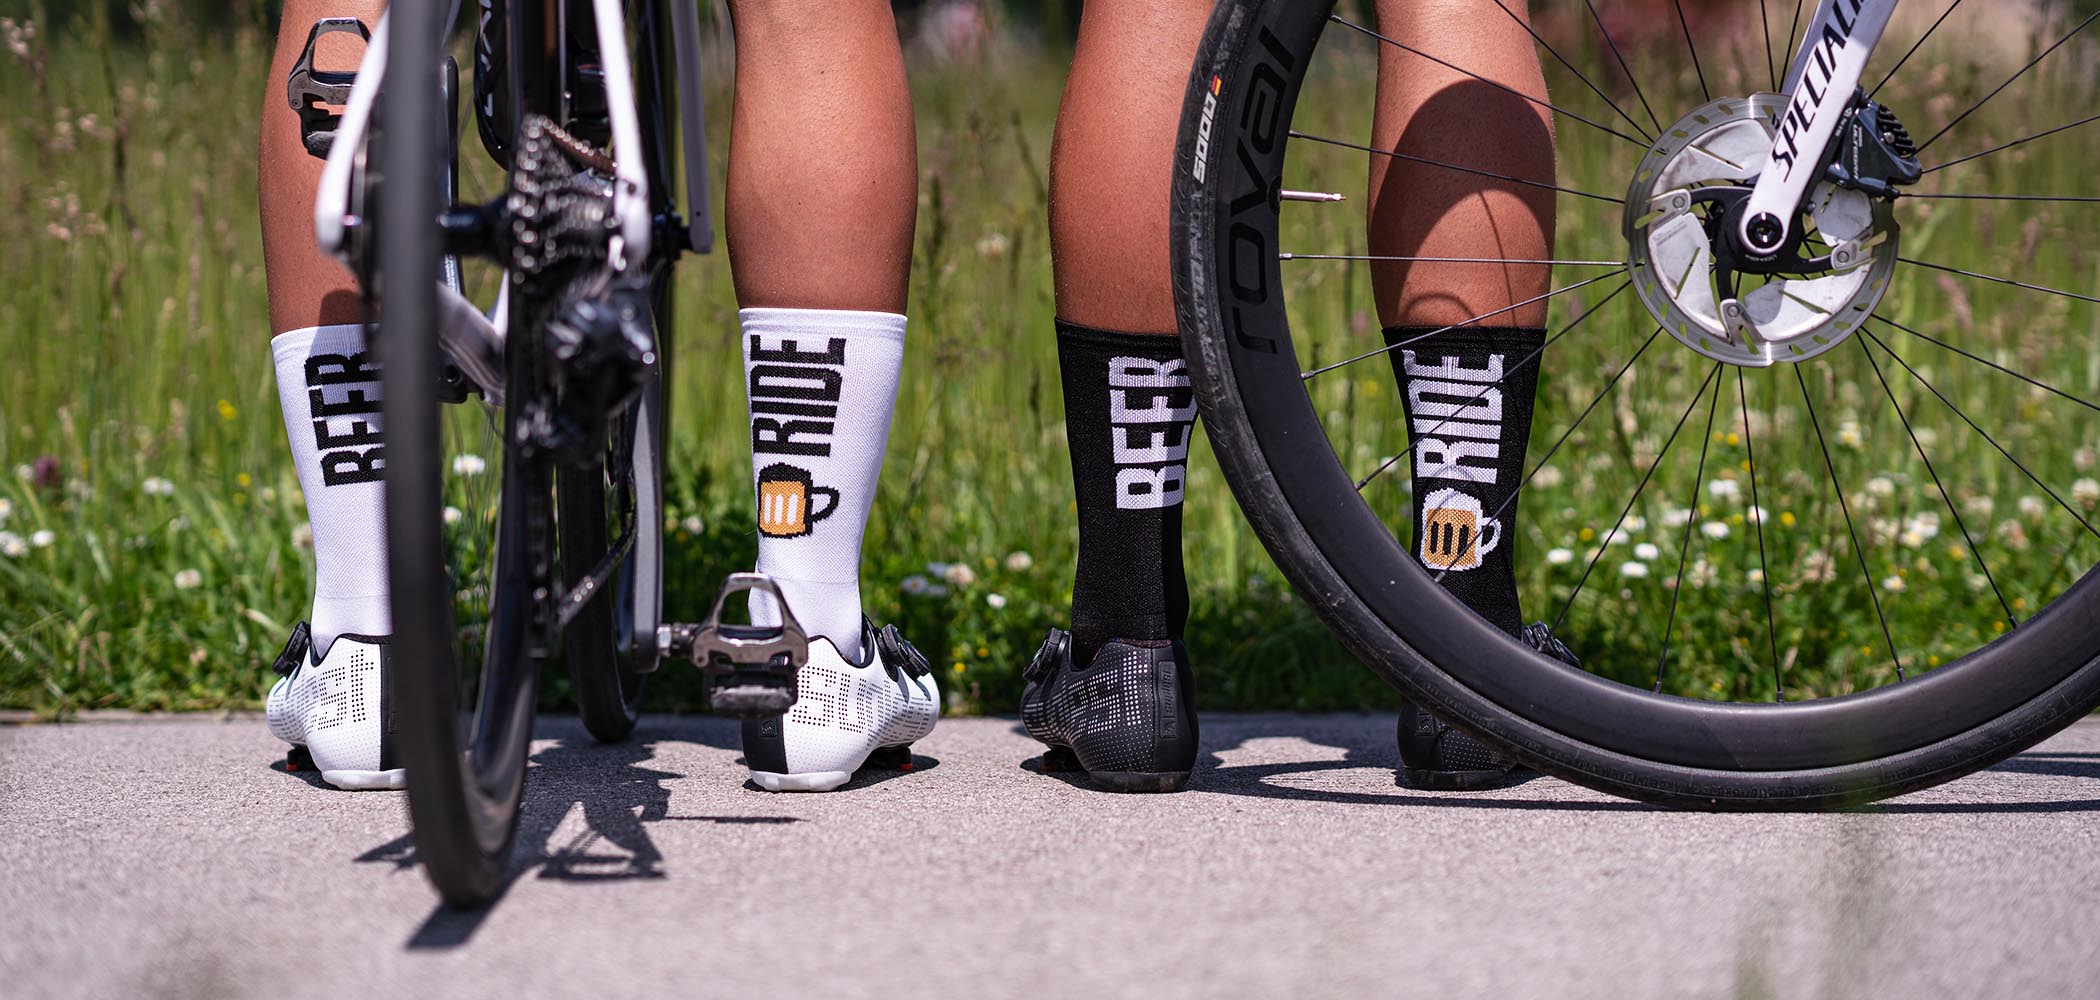  Radfahrerbeine mit Luxa TXT Socken.